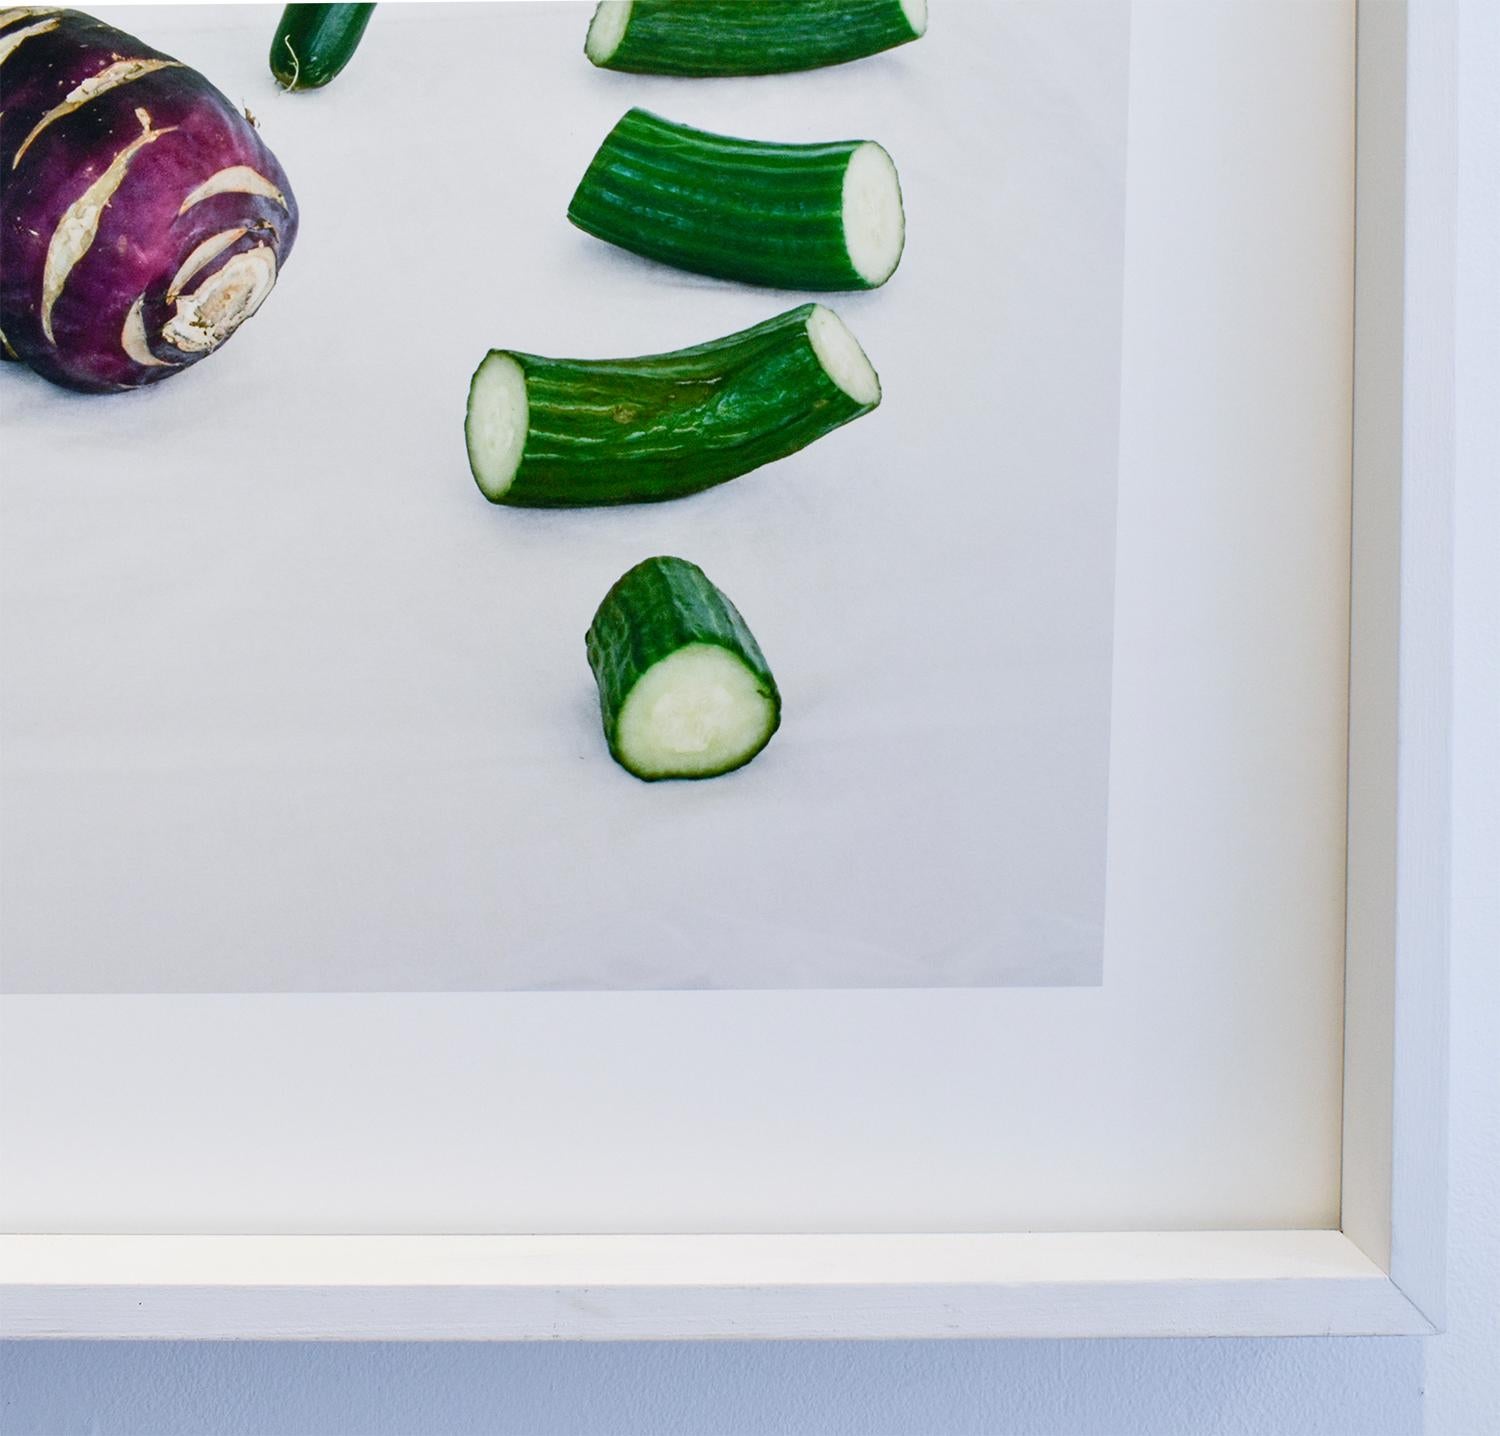 Cucumbers & Kohlrabi (Framierte Stilllebenfotografie, lila und grüne Gemüse)  (Grau), Still-Life Photograph, von David Halliday